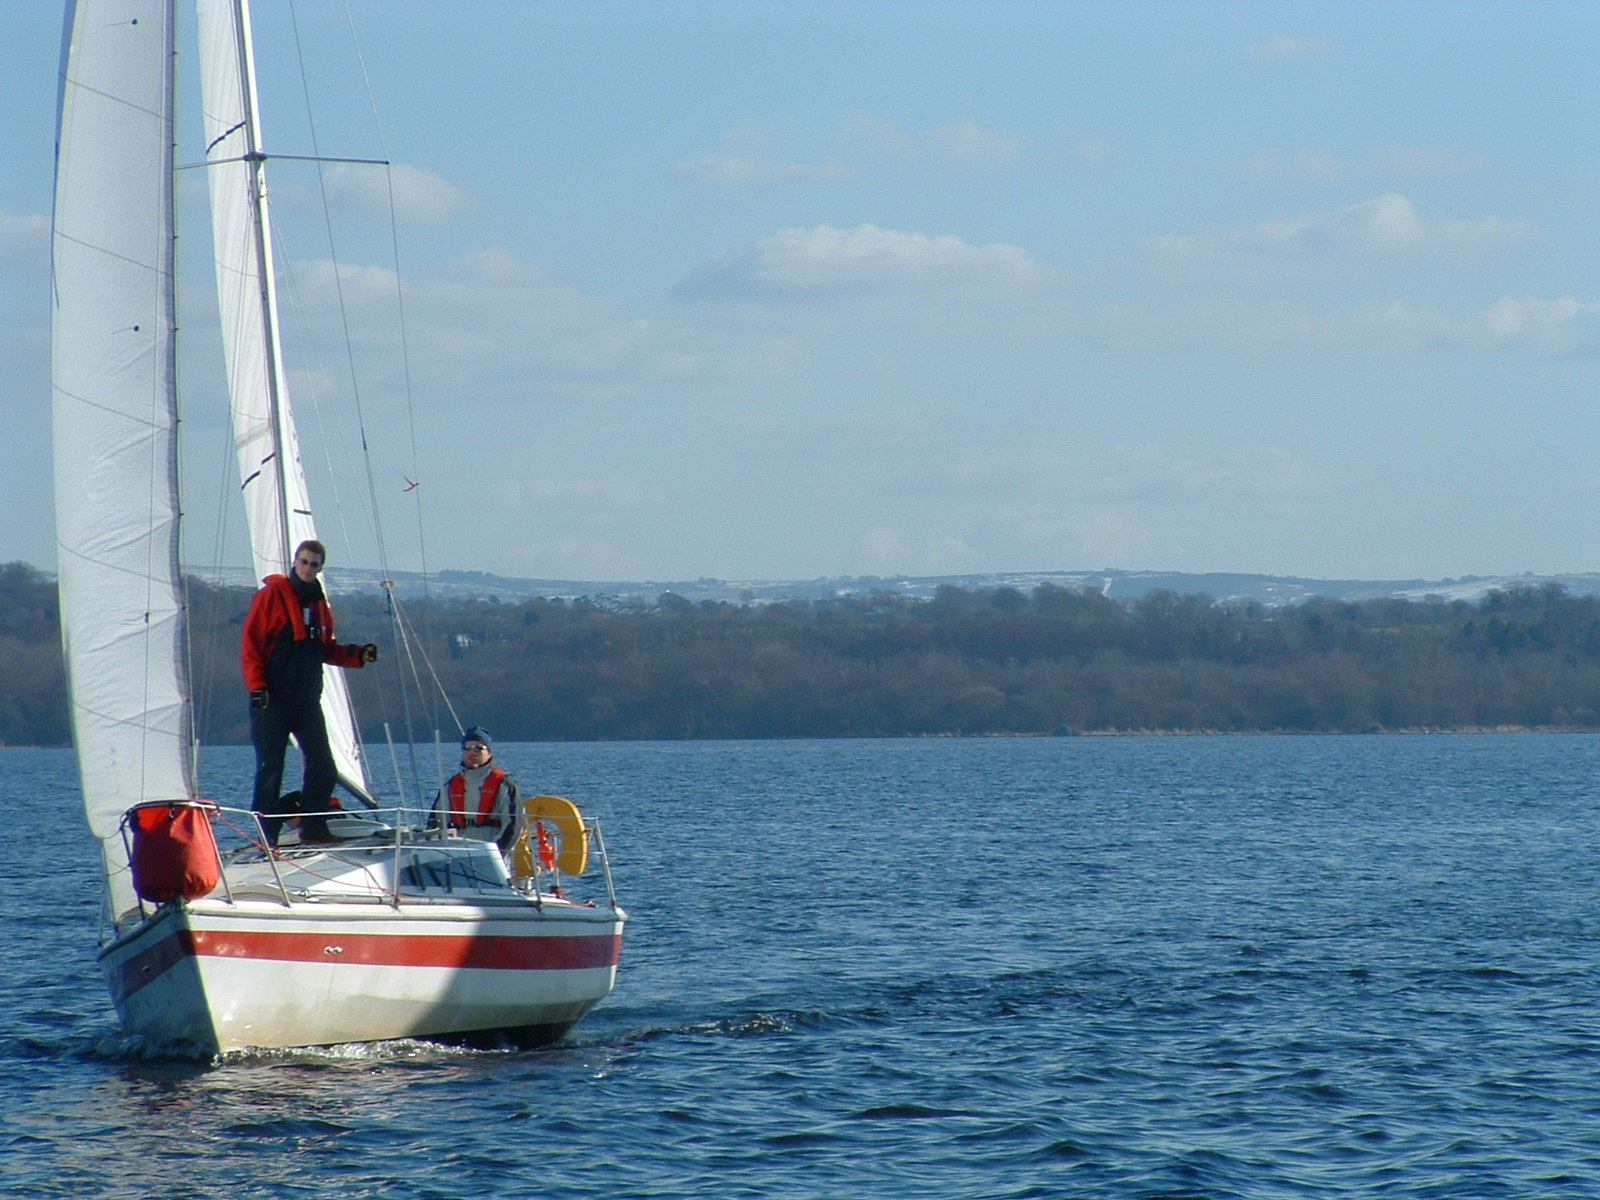 Ballyronan Boat Club Sailing